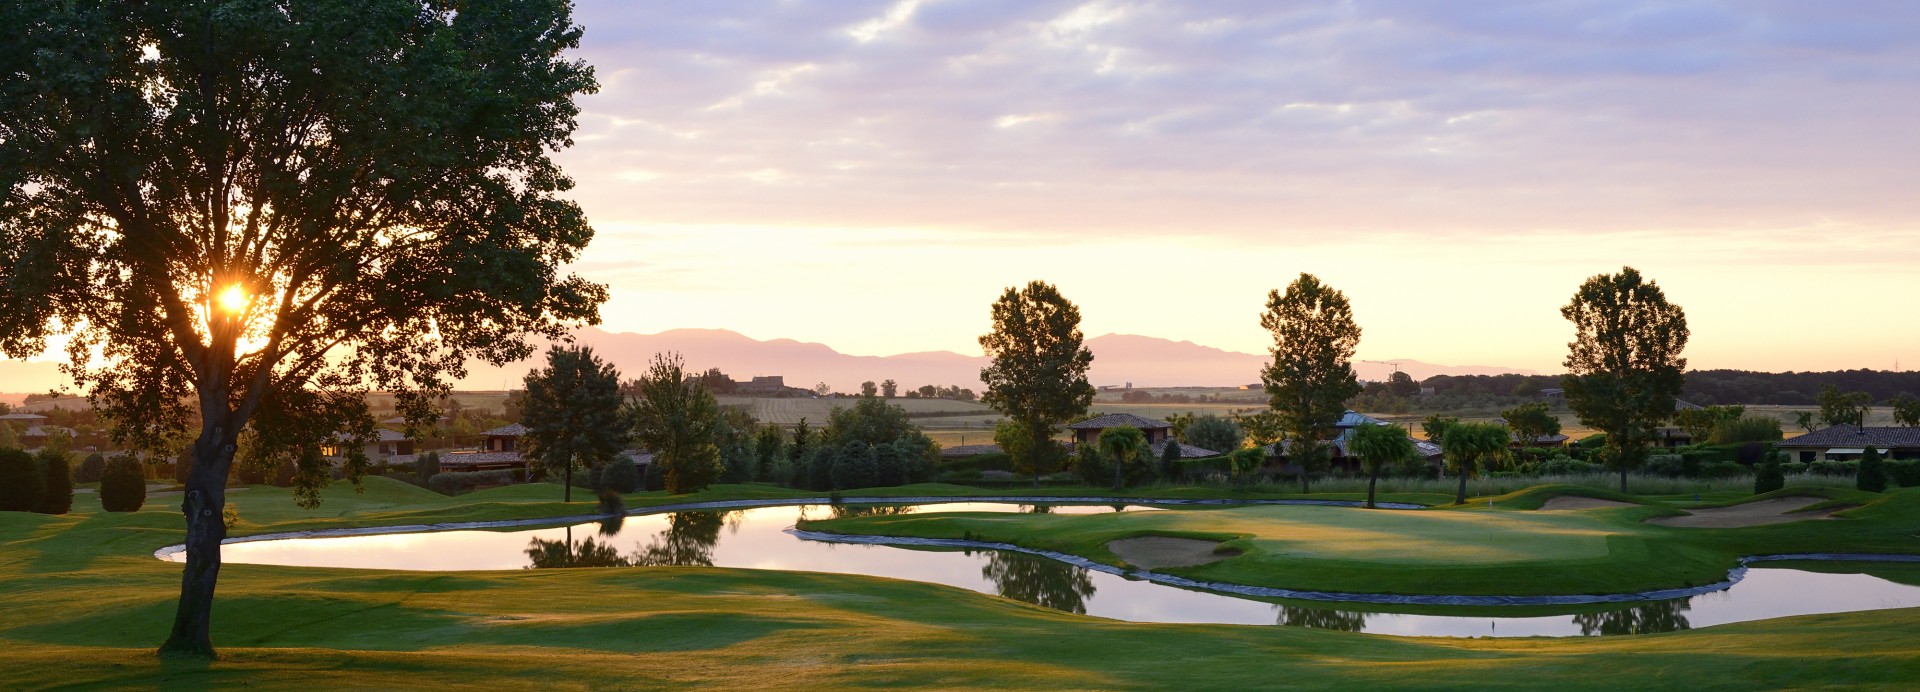 Torremirona Golf Club  | Golfové zájezdy, golfová dovolená, luxusní golf